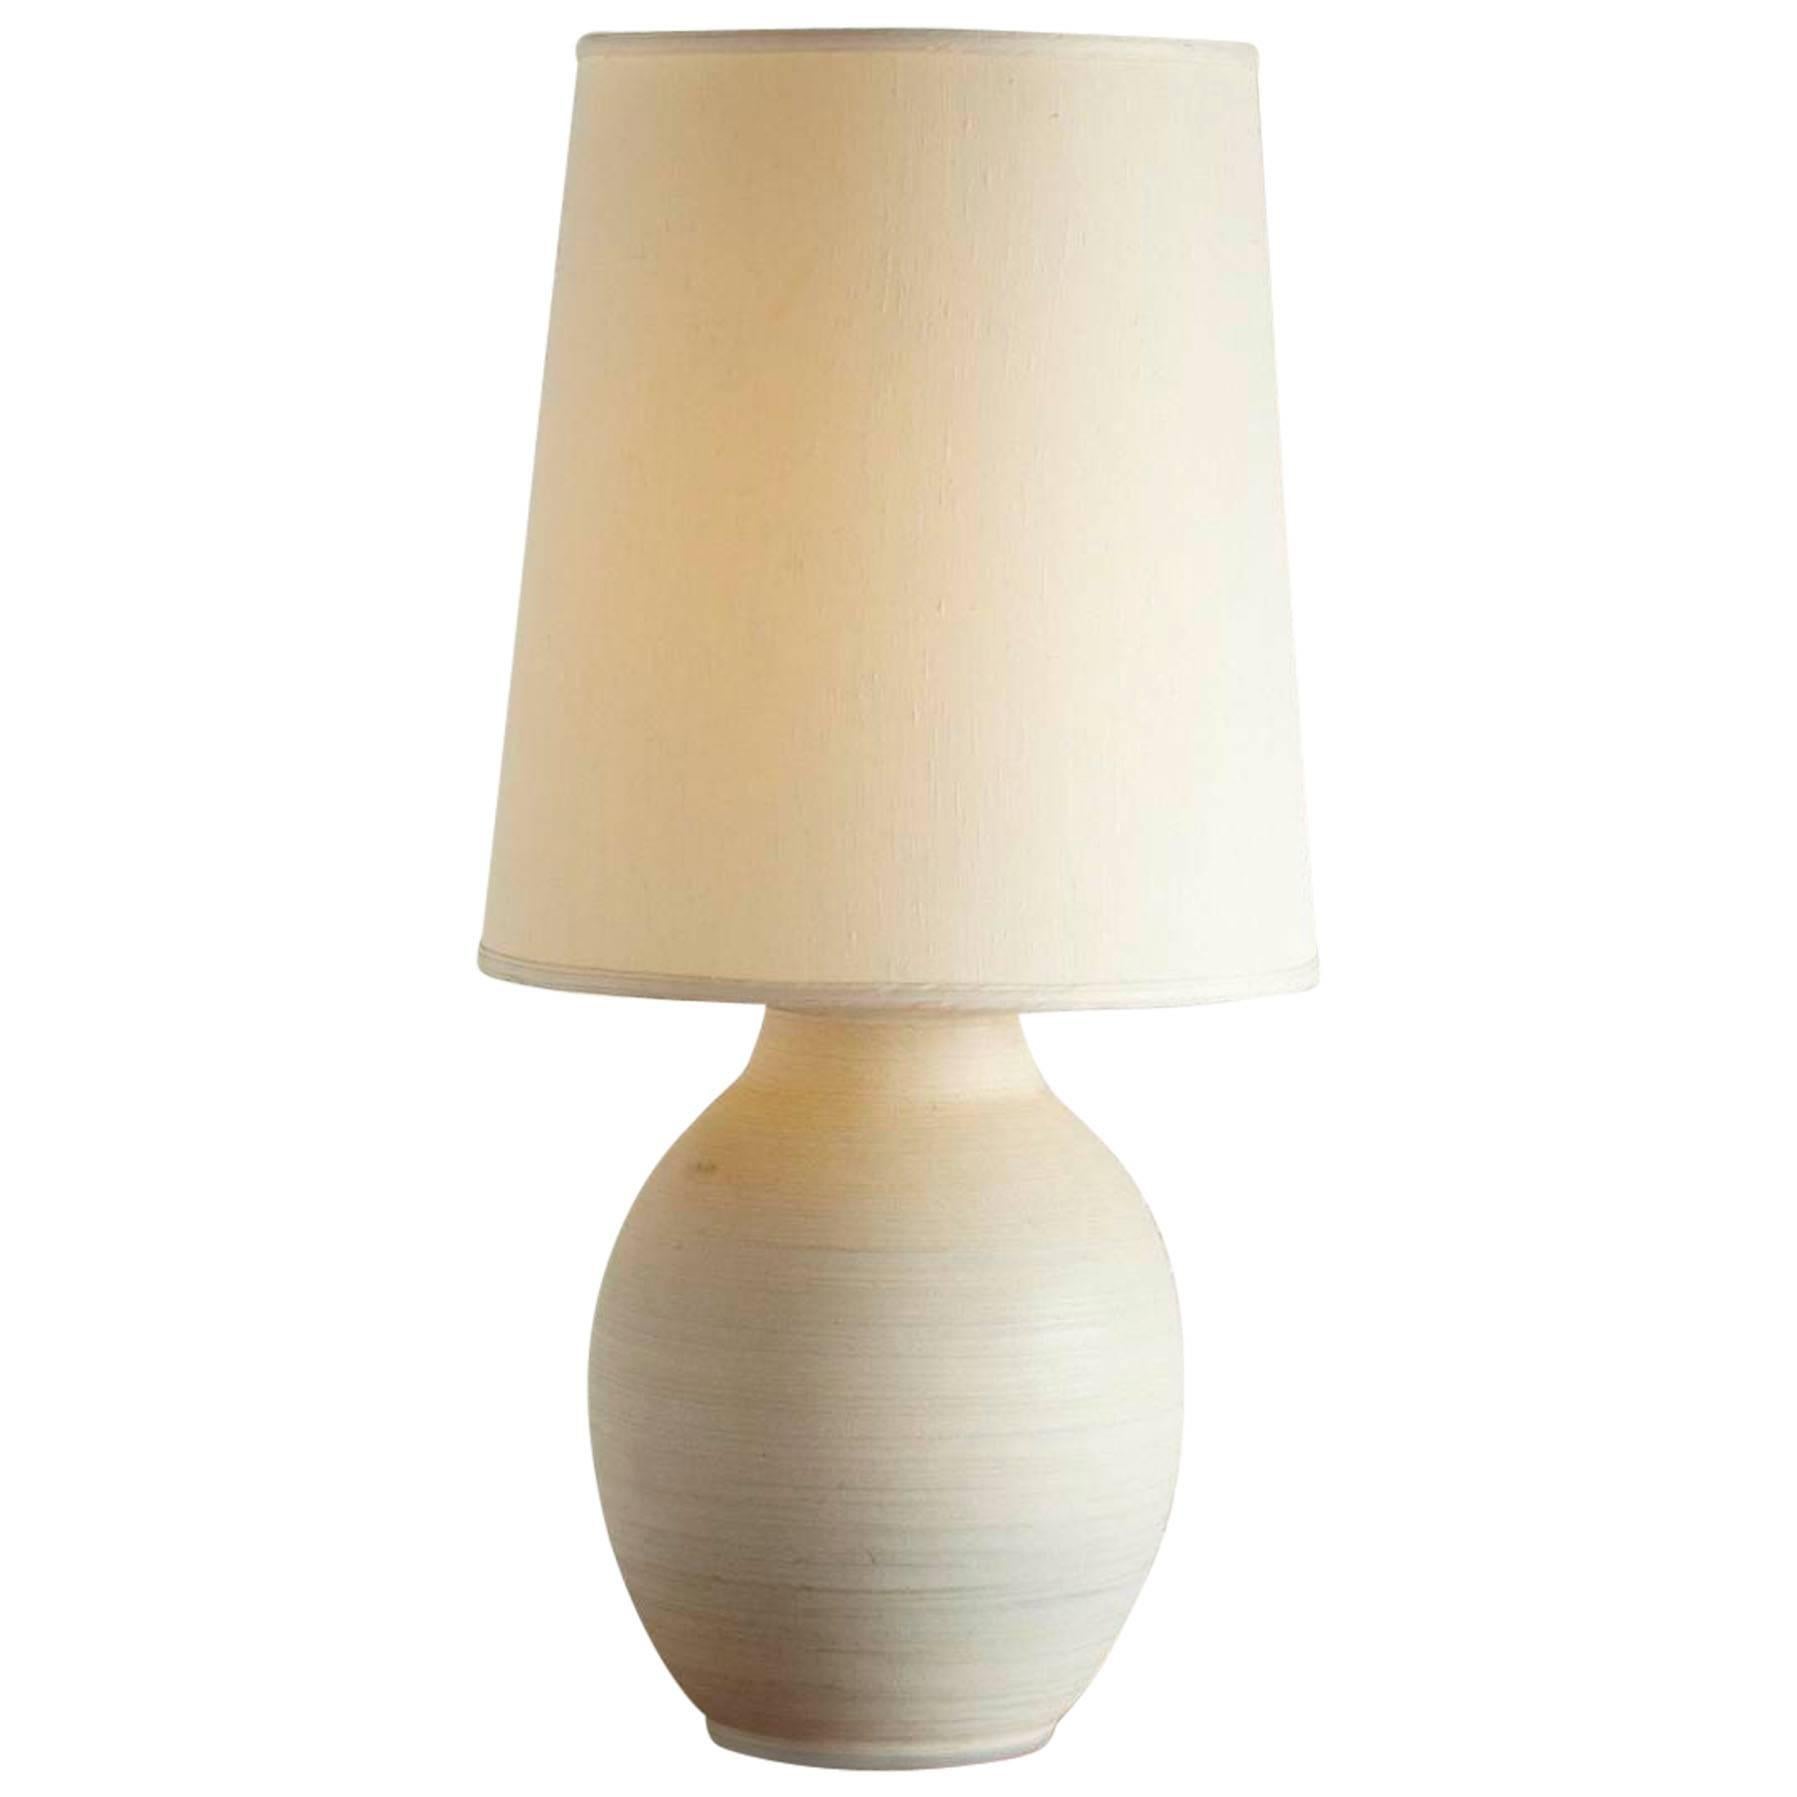 Large Italian Cream Colored Ceramic Table Lamp